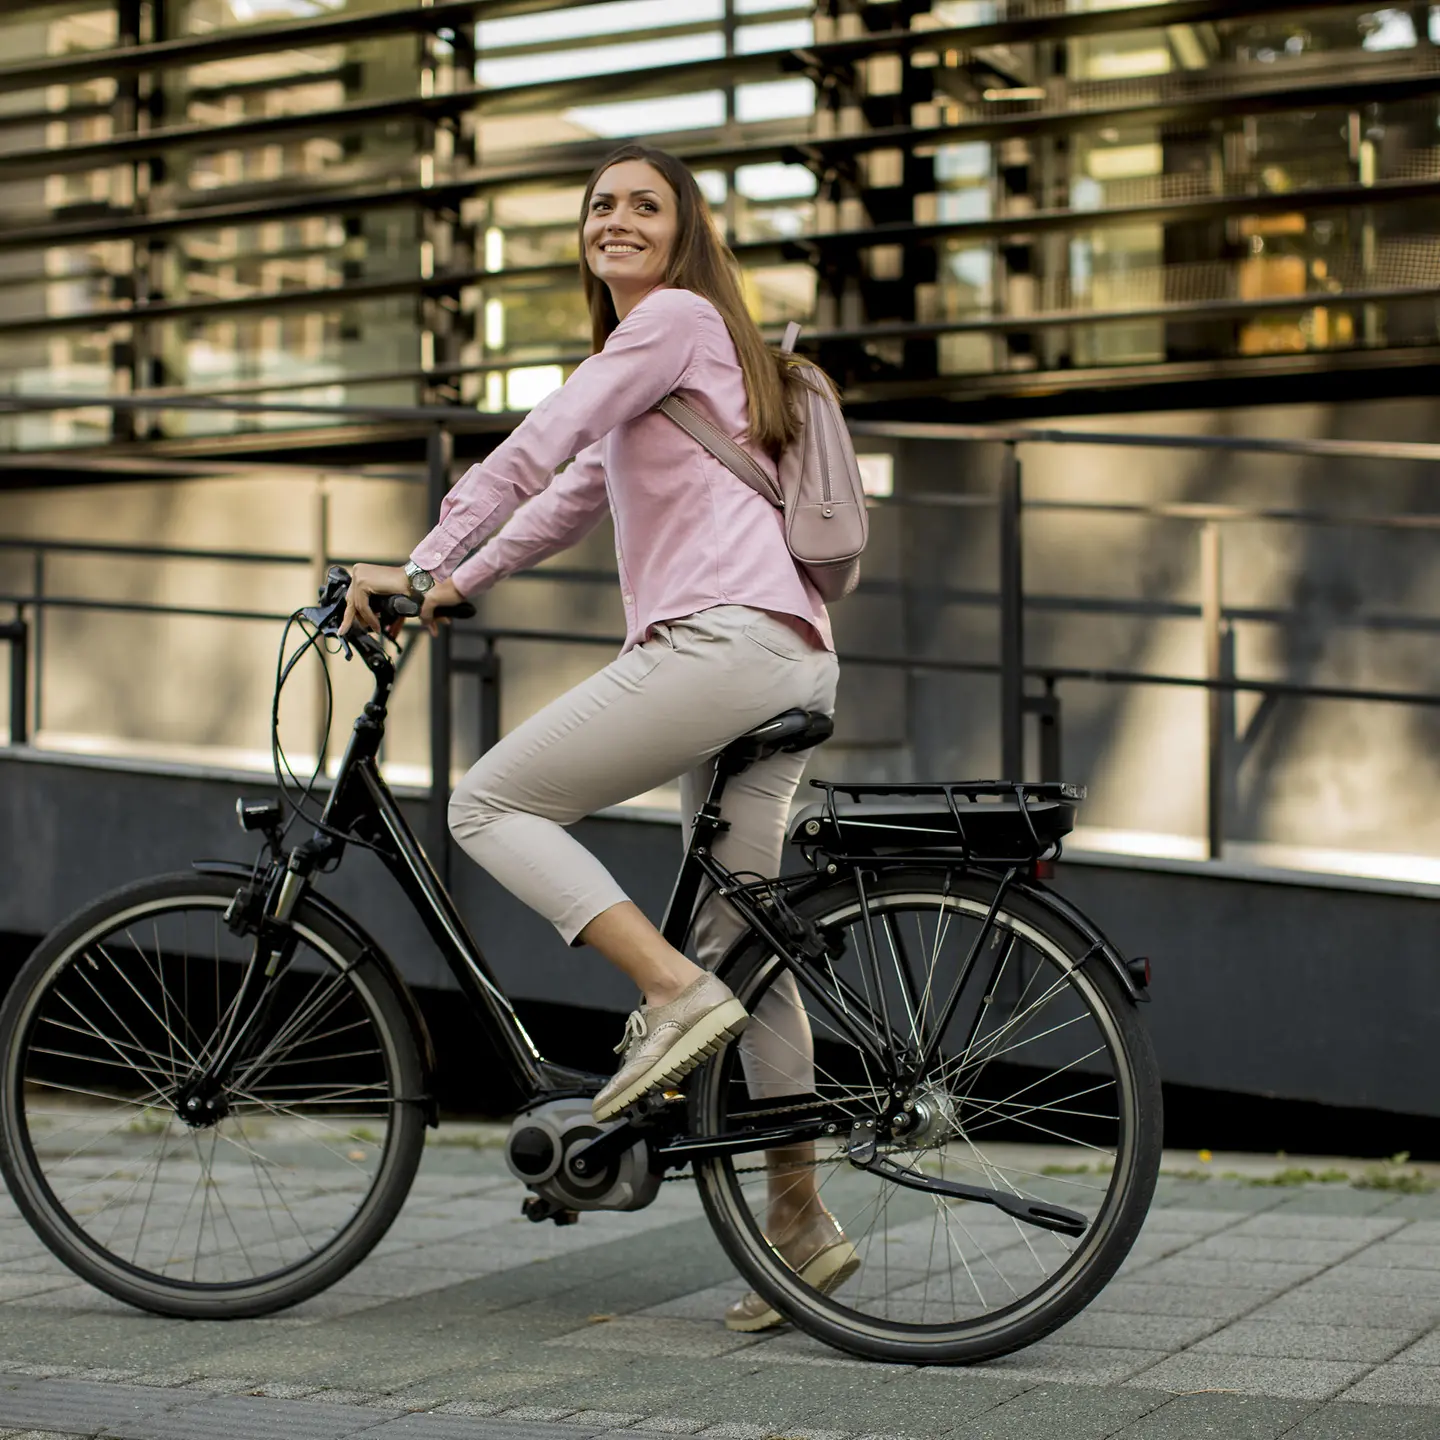 Das Bild zeigt eine Frau auf einem E-Bike.